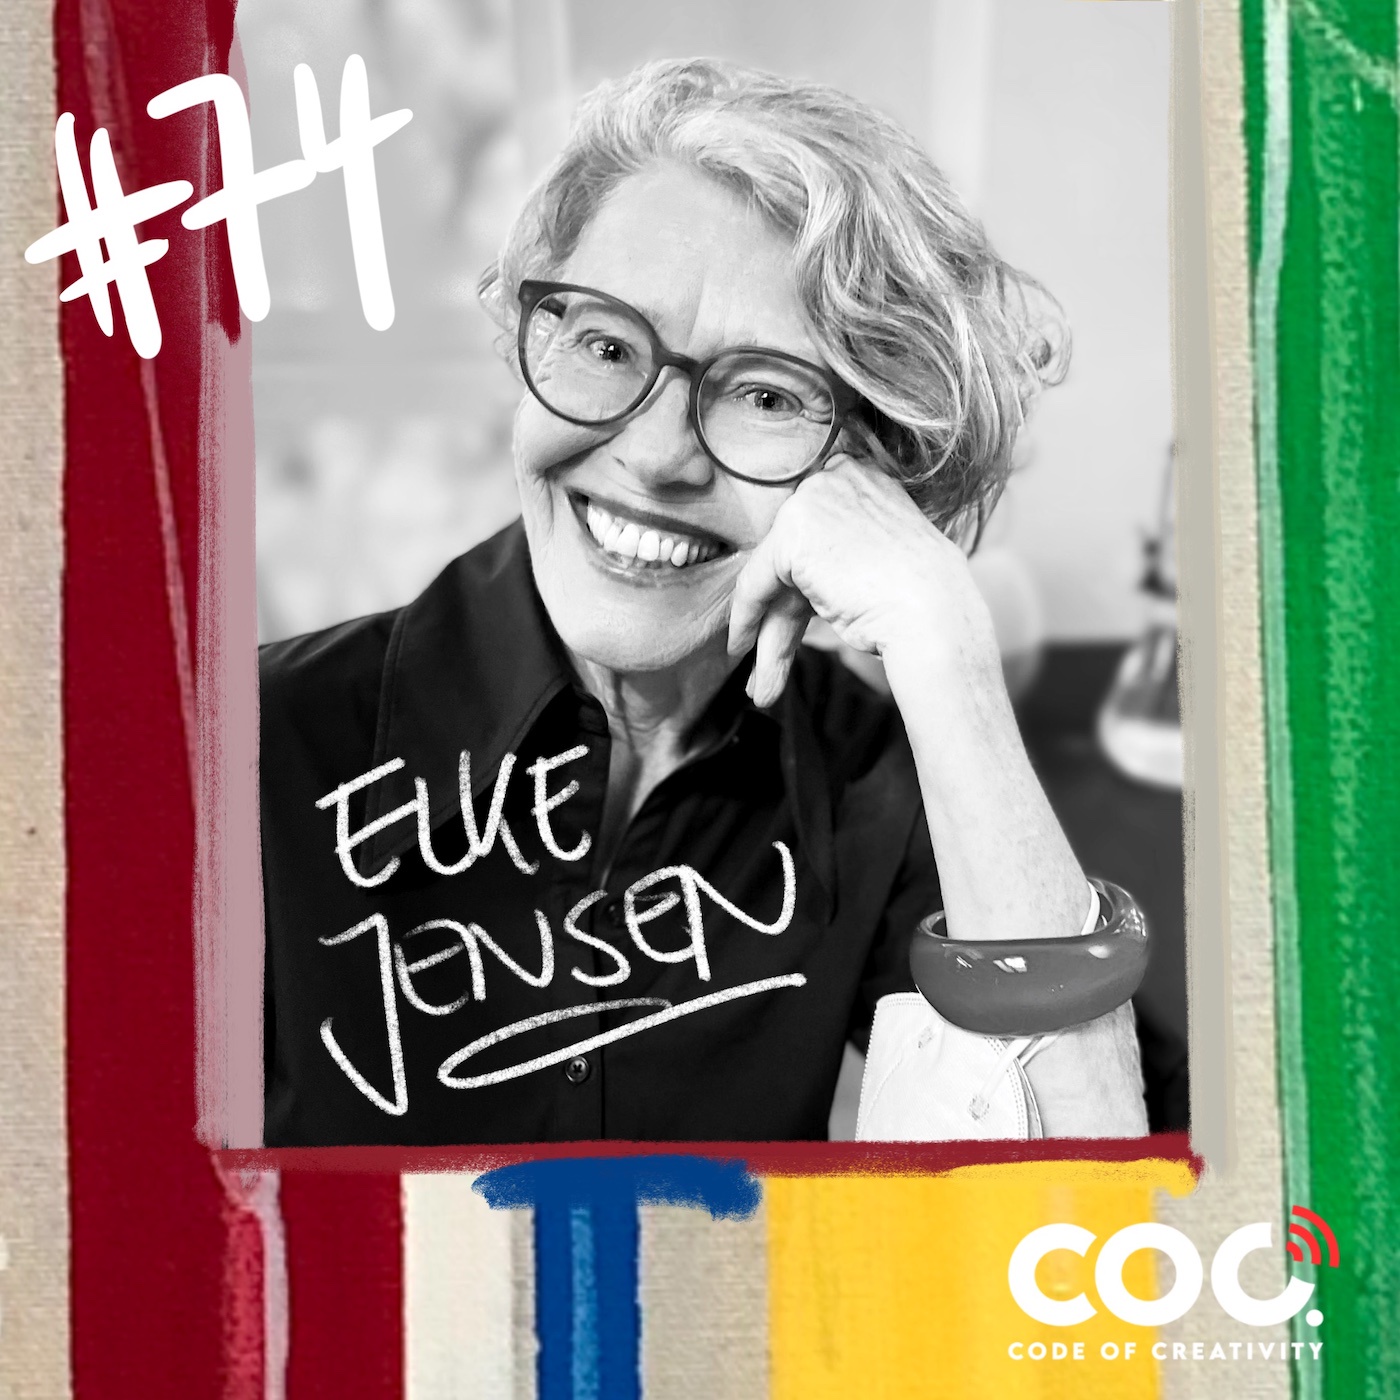 #74 Elke Jensen spannende Start-Up Gründerin - ehemalige Professorin für Design